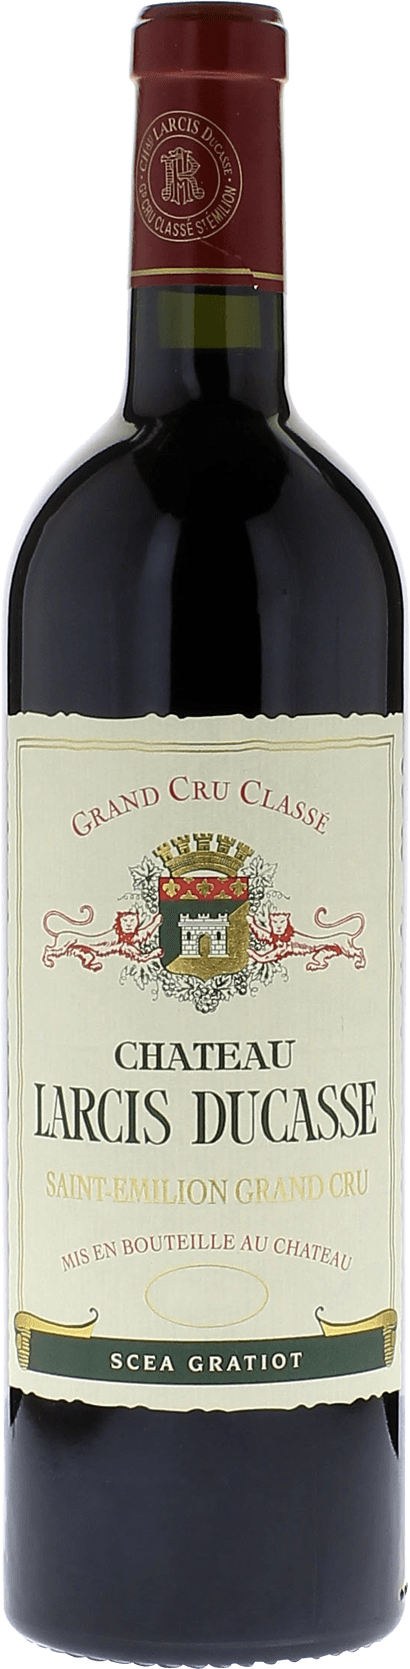 Larcis-ducasse  2021 Grand cru class Saint-Emilion, Bordeaux rouge